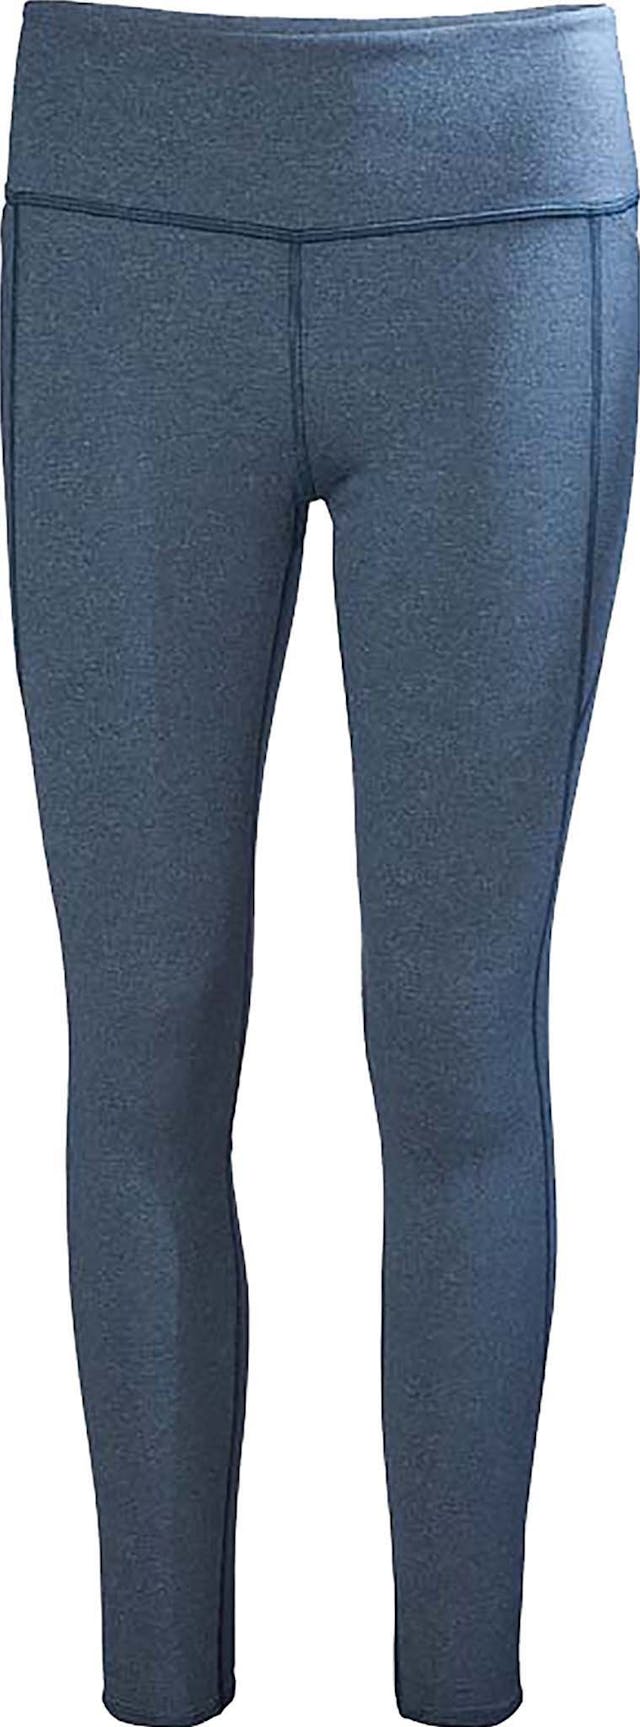 Product image for Myra Legging - Women's